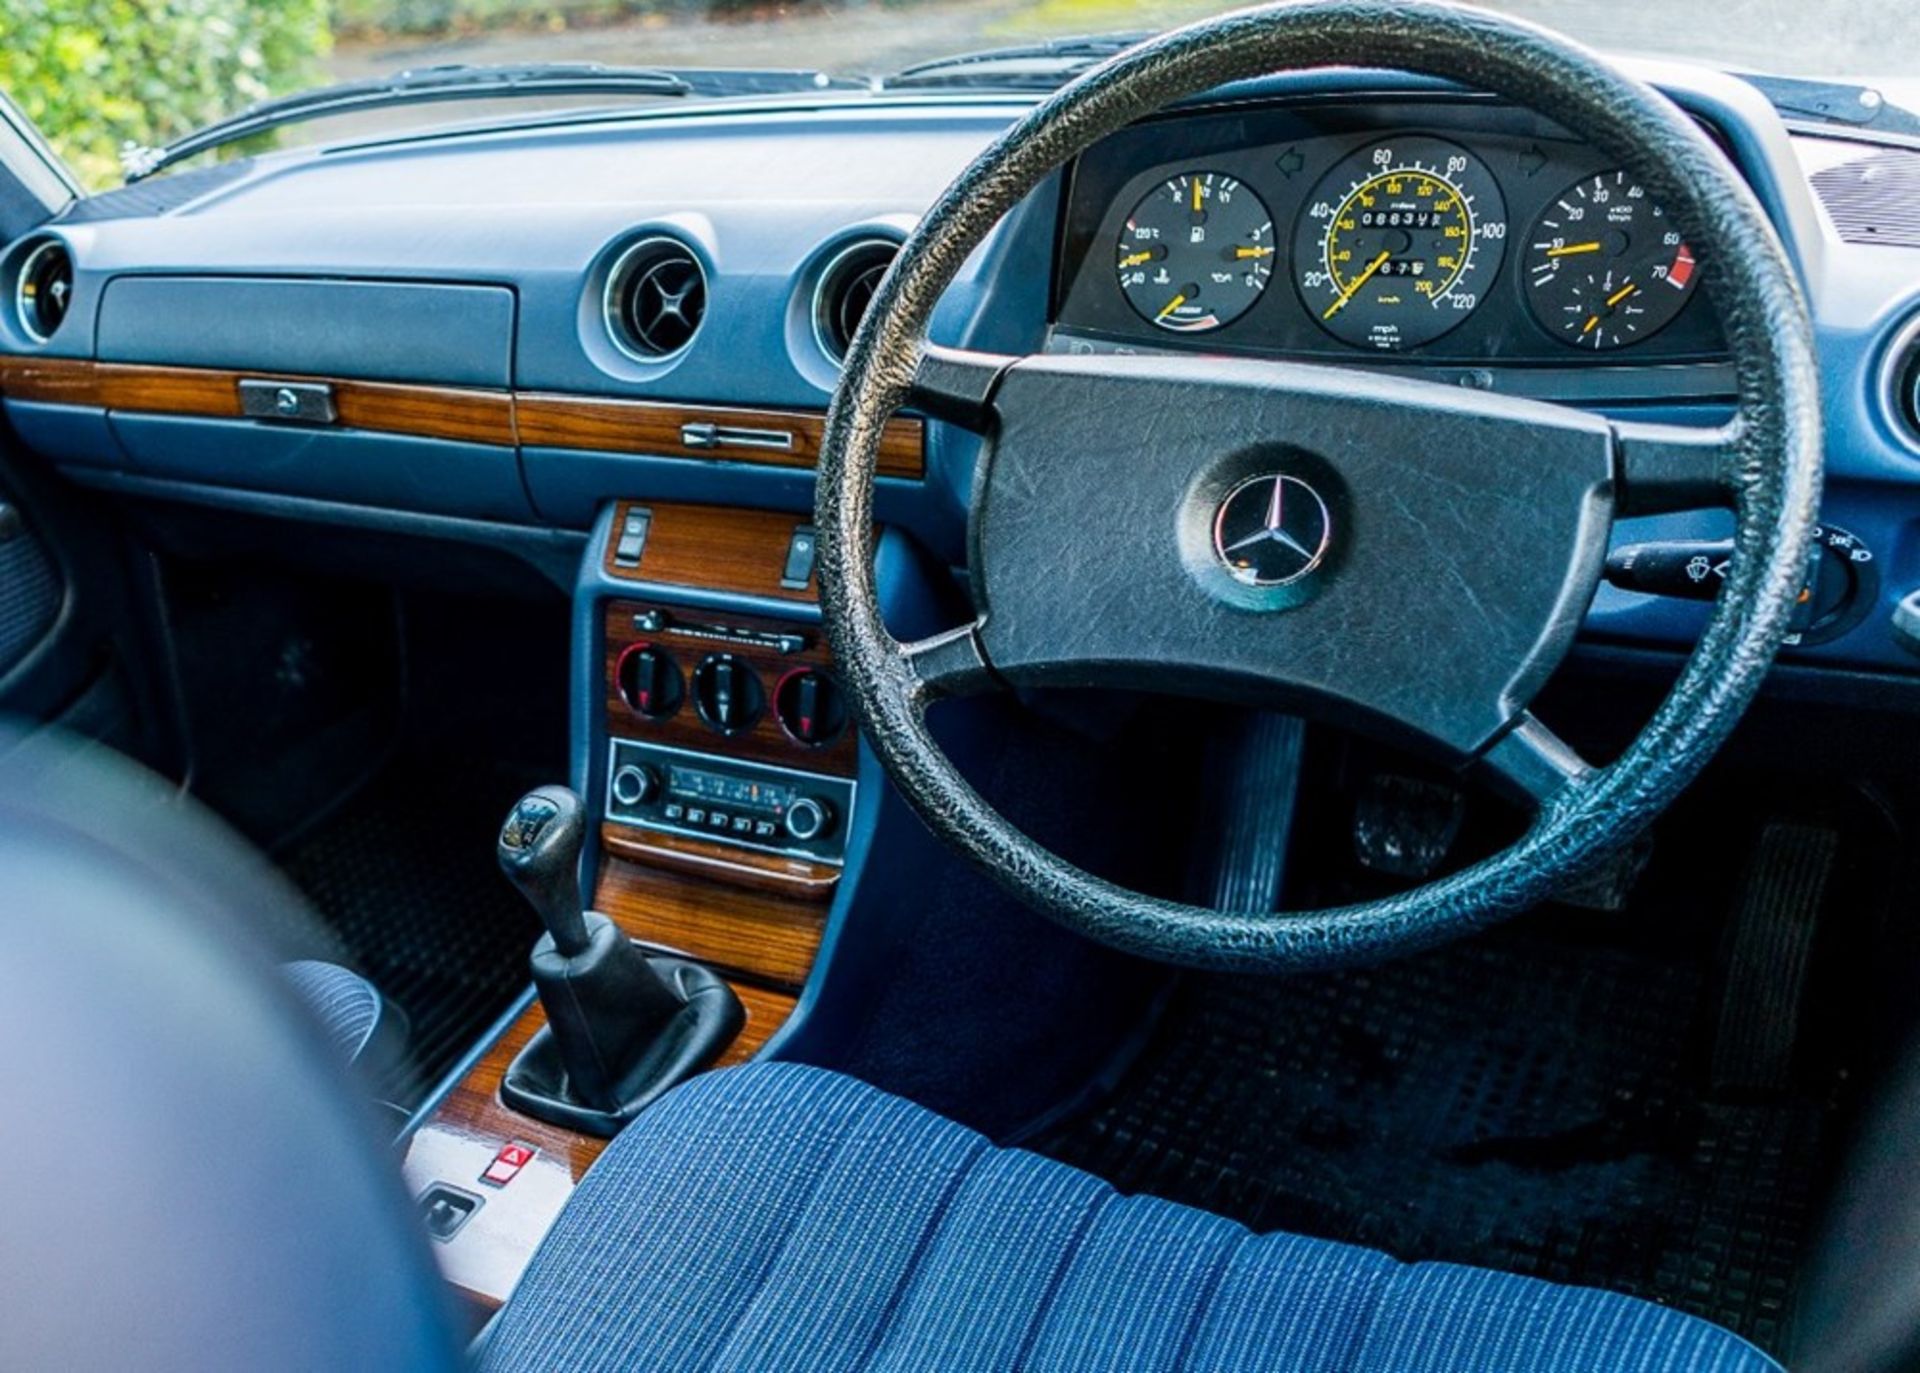 1984 Mercedes-Benz 230 E - Image 5 of 8